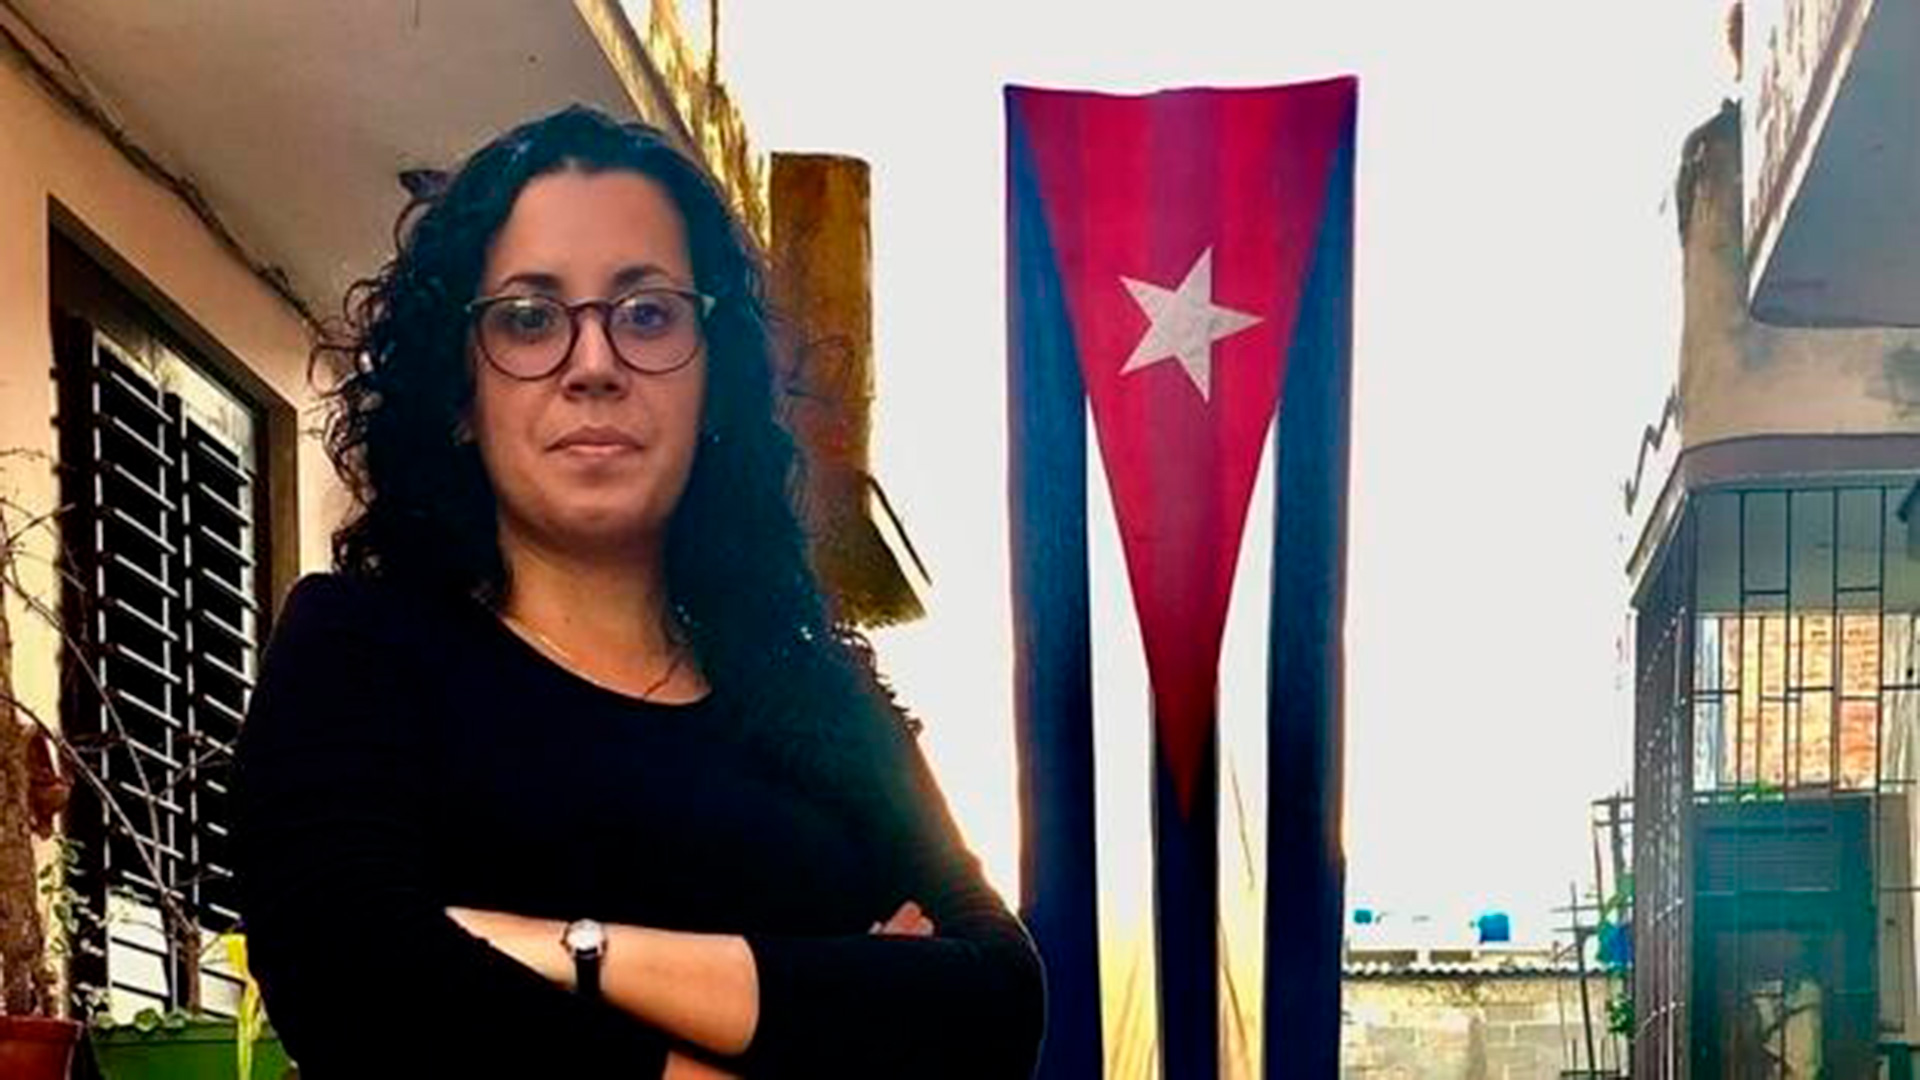 La comunicadora Camila Acosta pasará a régimen de arresto domiciliario